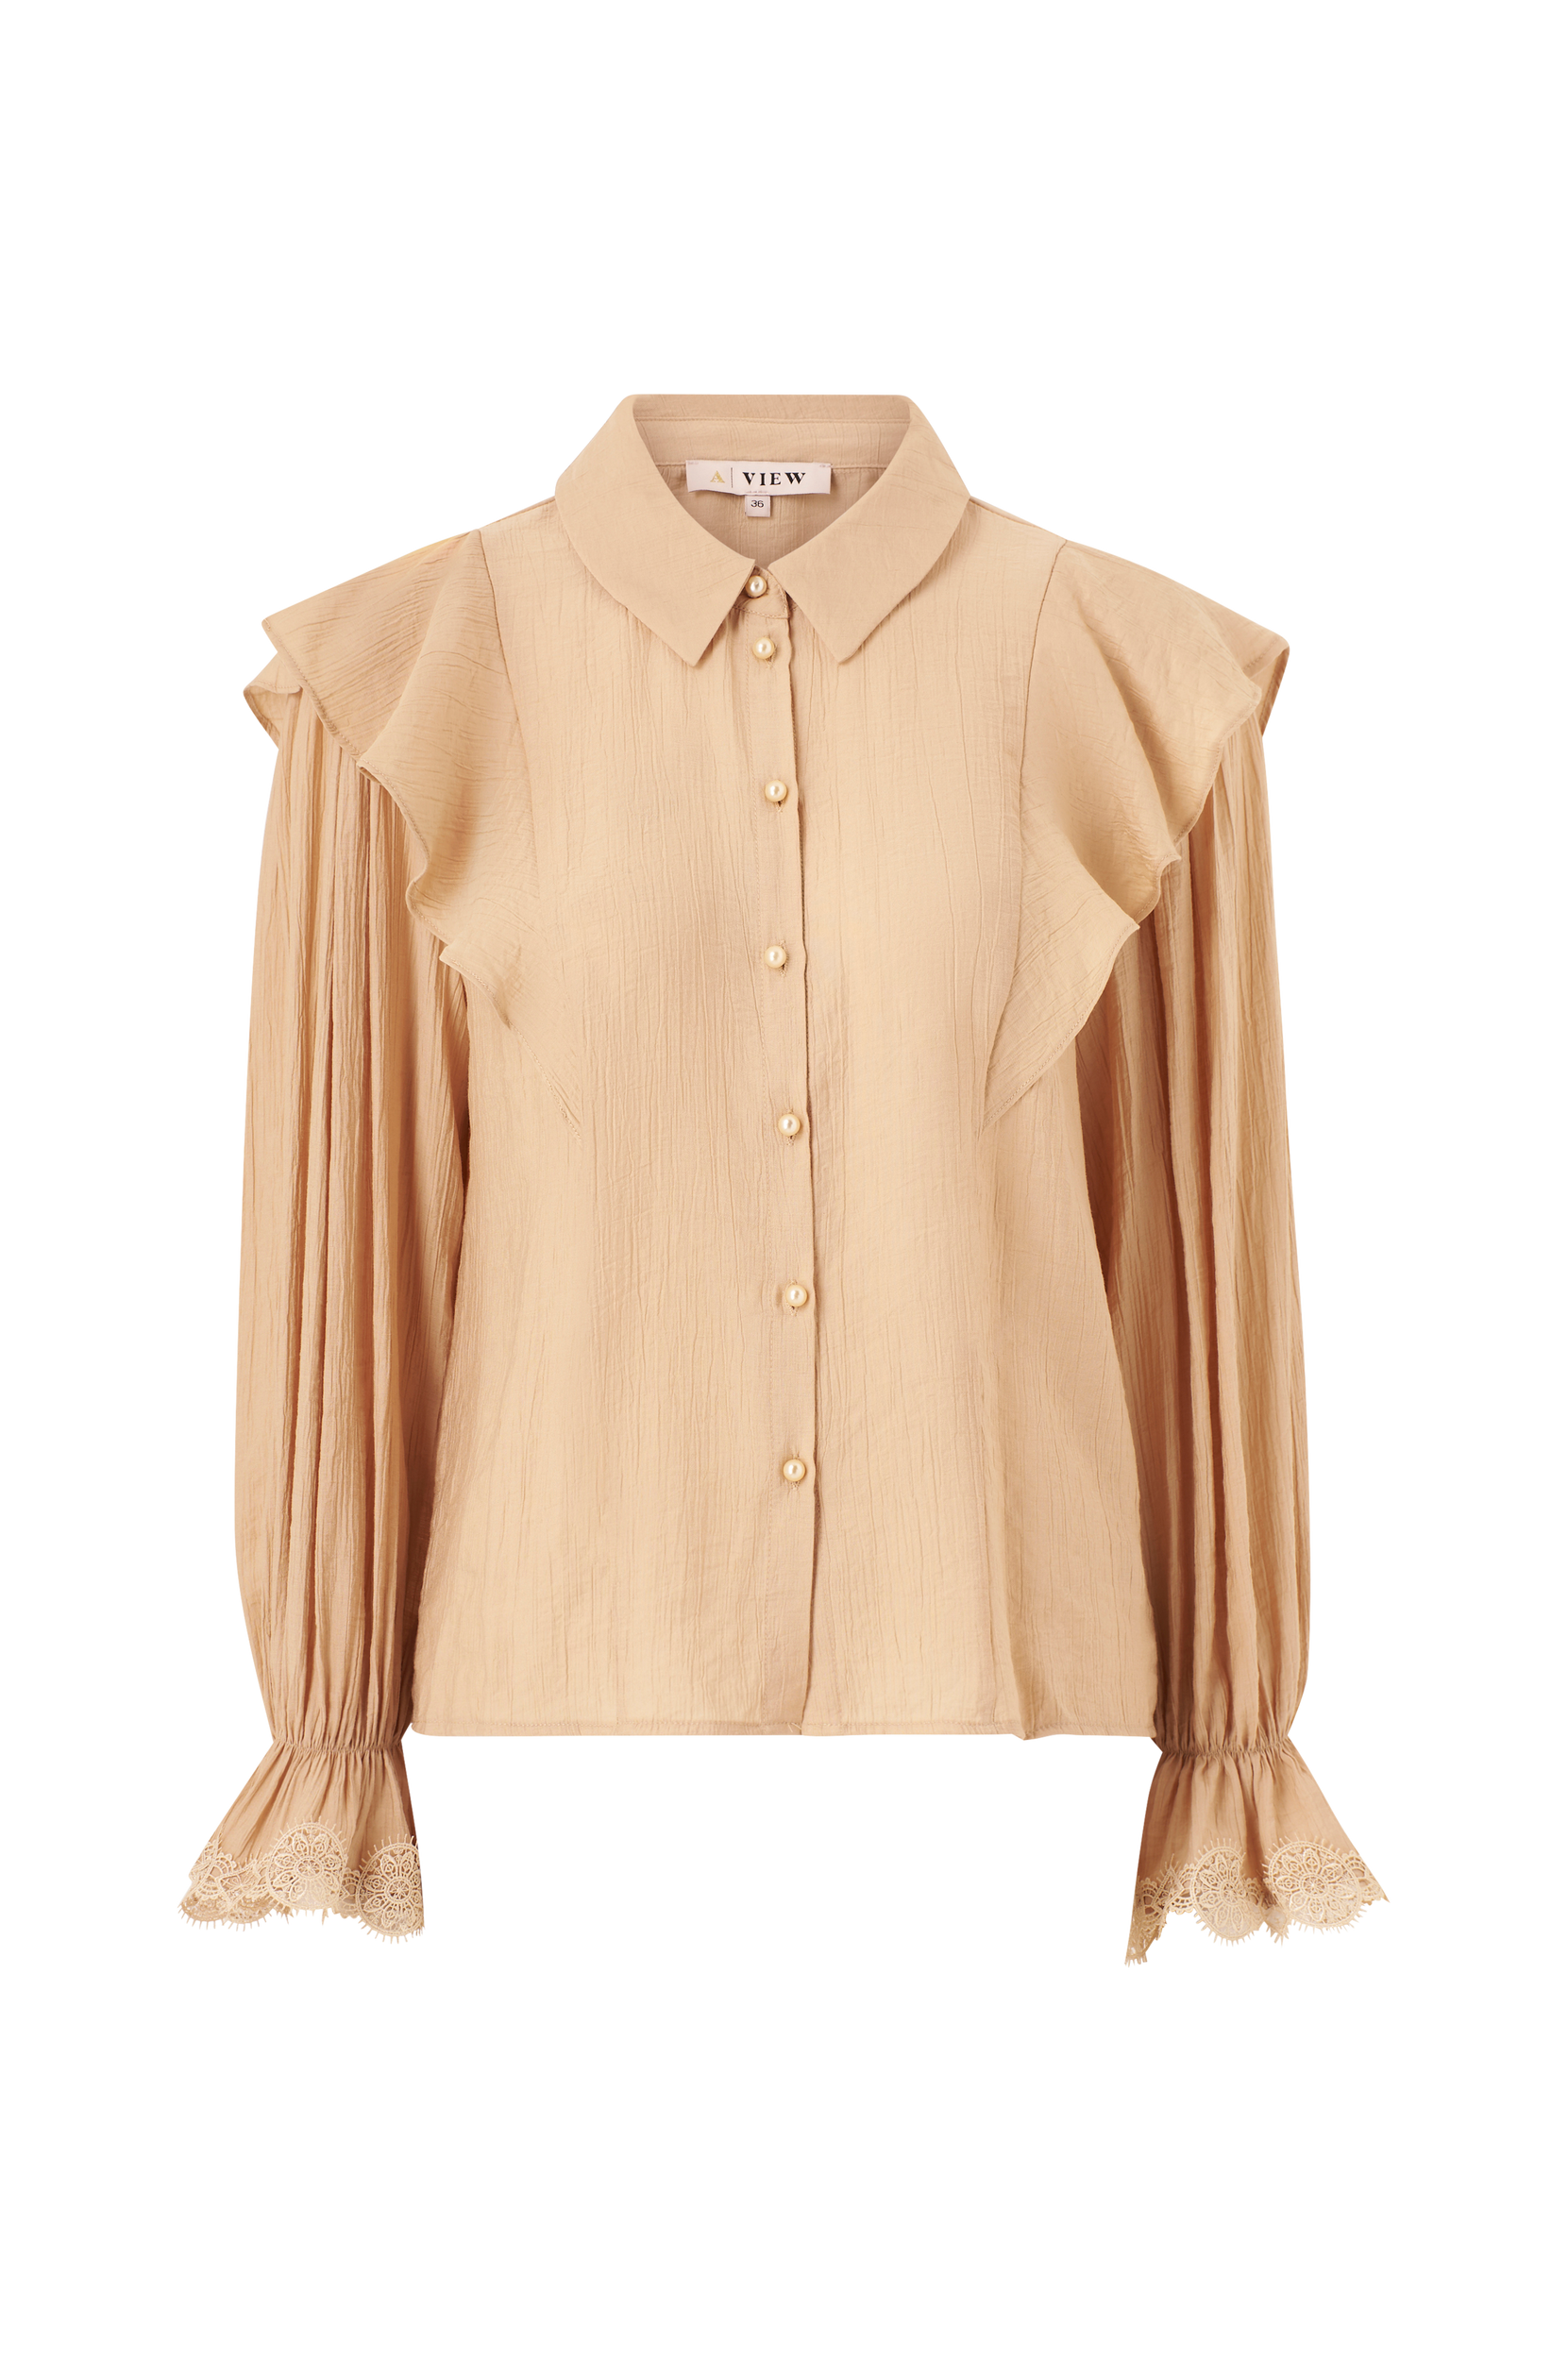 A-View - Bluse Sophie Shirt - Beige - - Skjorter - Tøj til kvinder (31153865)